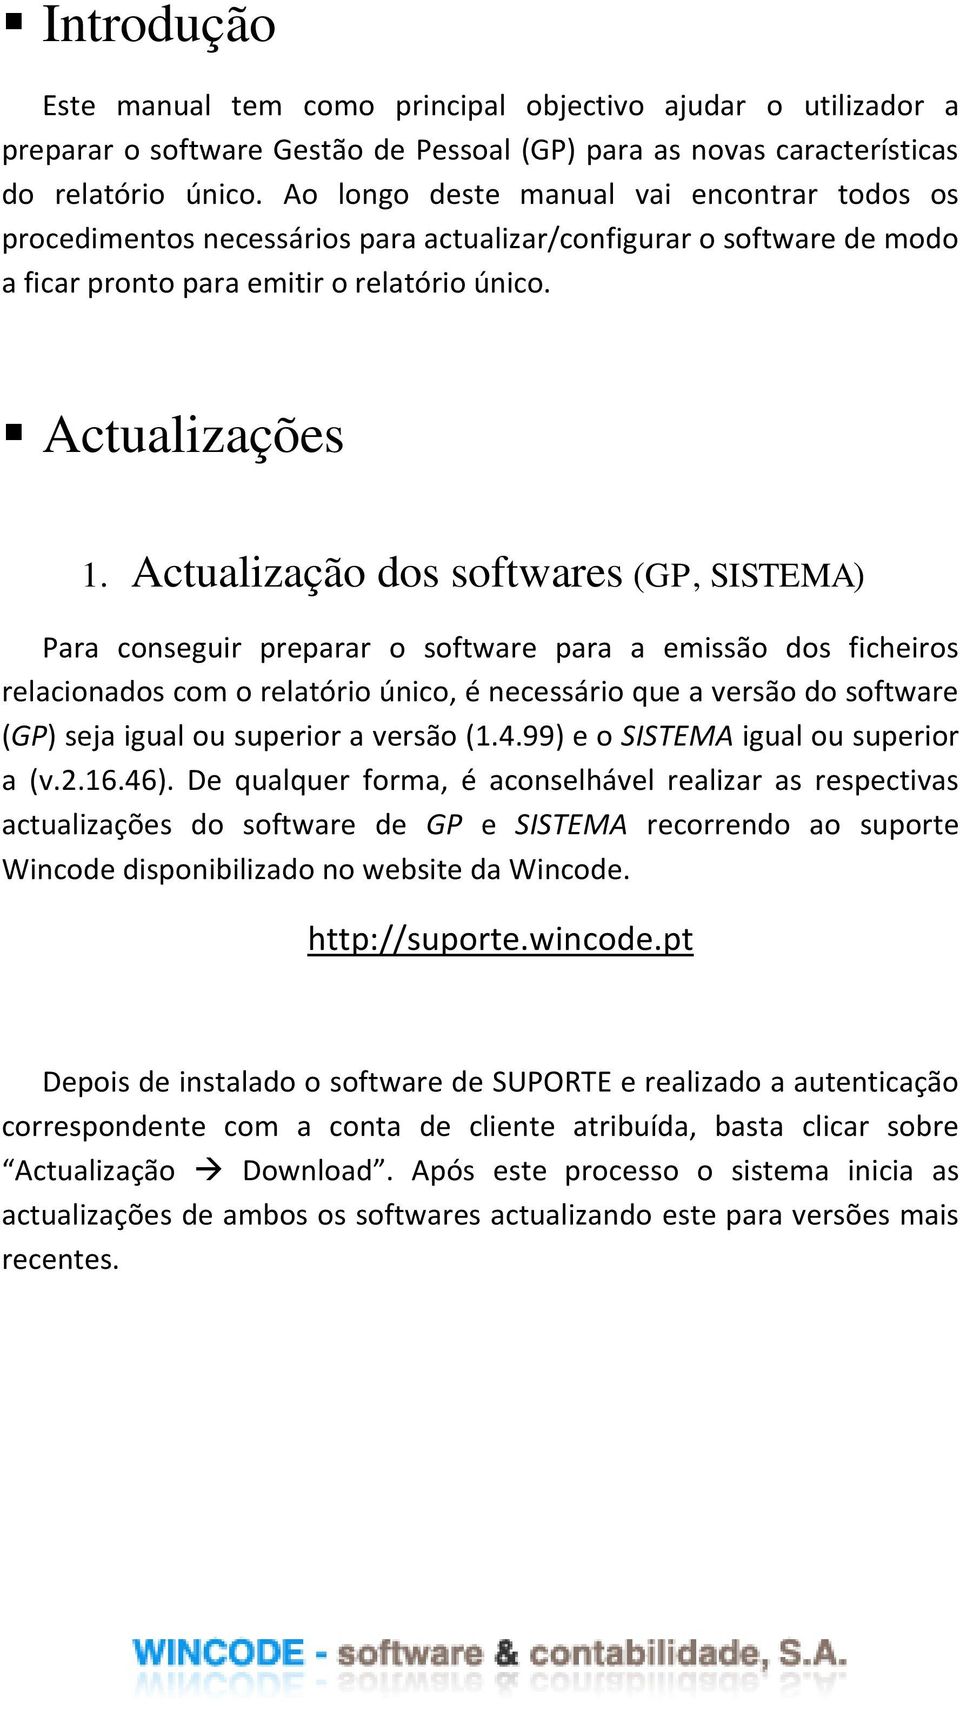 Actualização dos softwares (GP, SISTEMA) Para conseguir preparar o software para a emissão dos ficheiros relacionados com o relatório único, é necessário que a versão do software (GP) seja igual ou